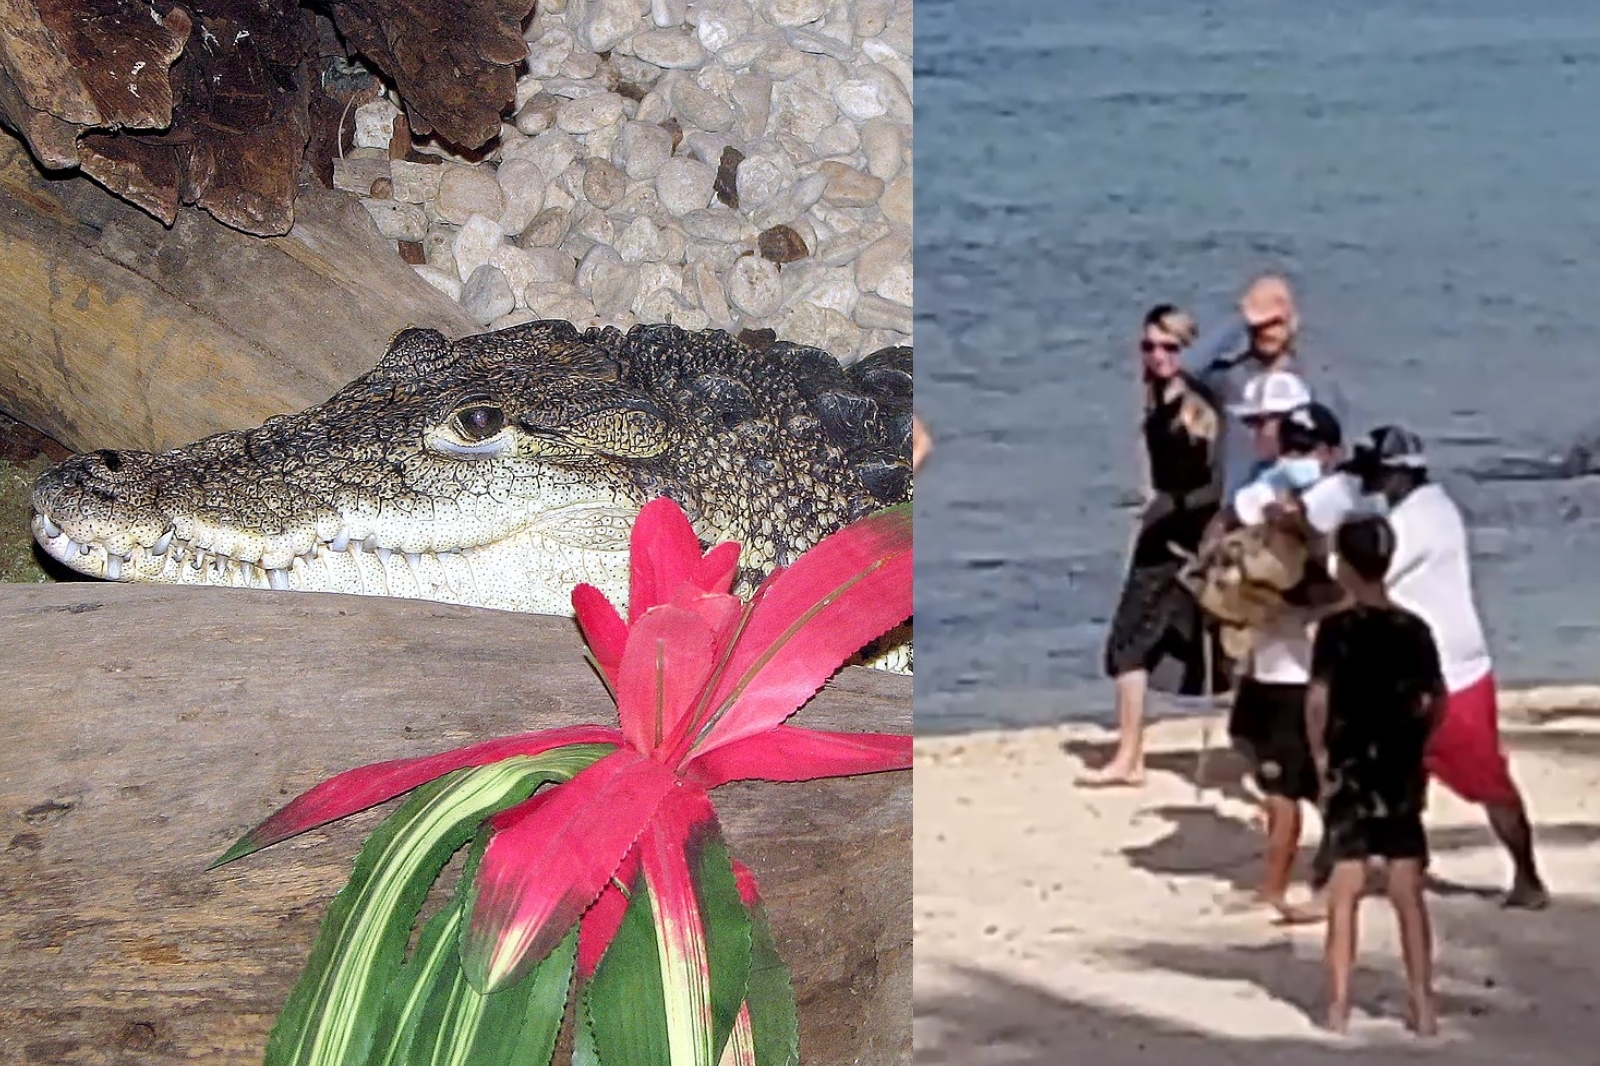 Capturan a cocodrilo que nadaba en una playa de Cozumel: VIDEO